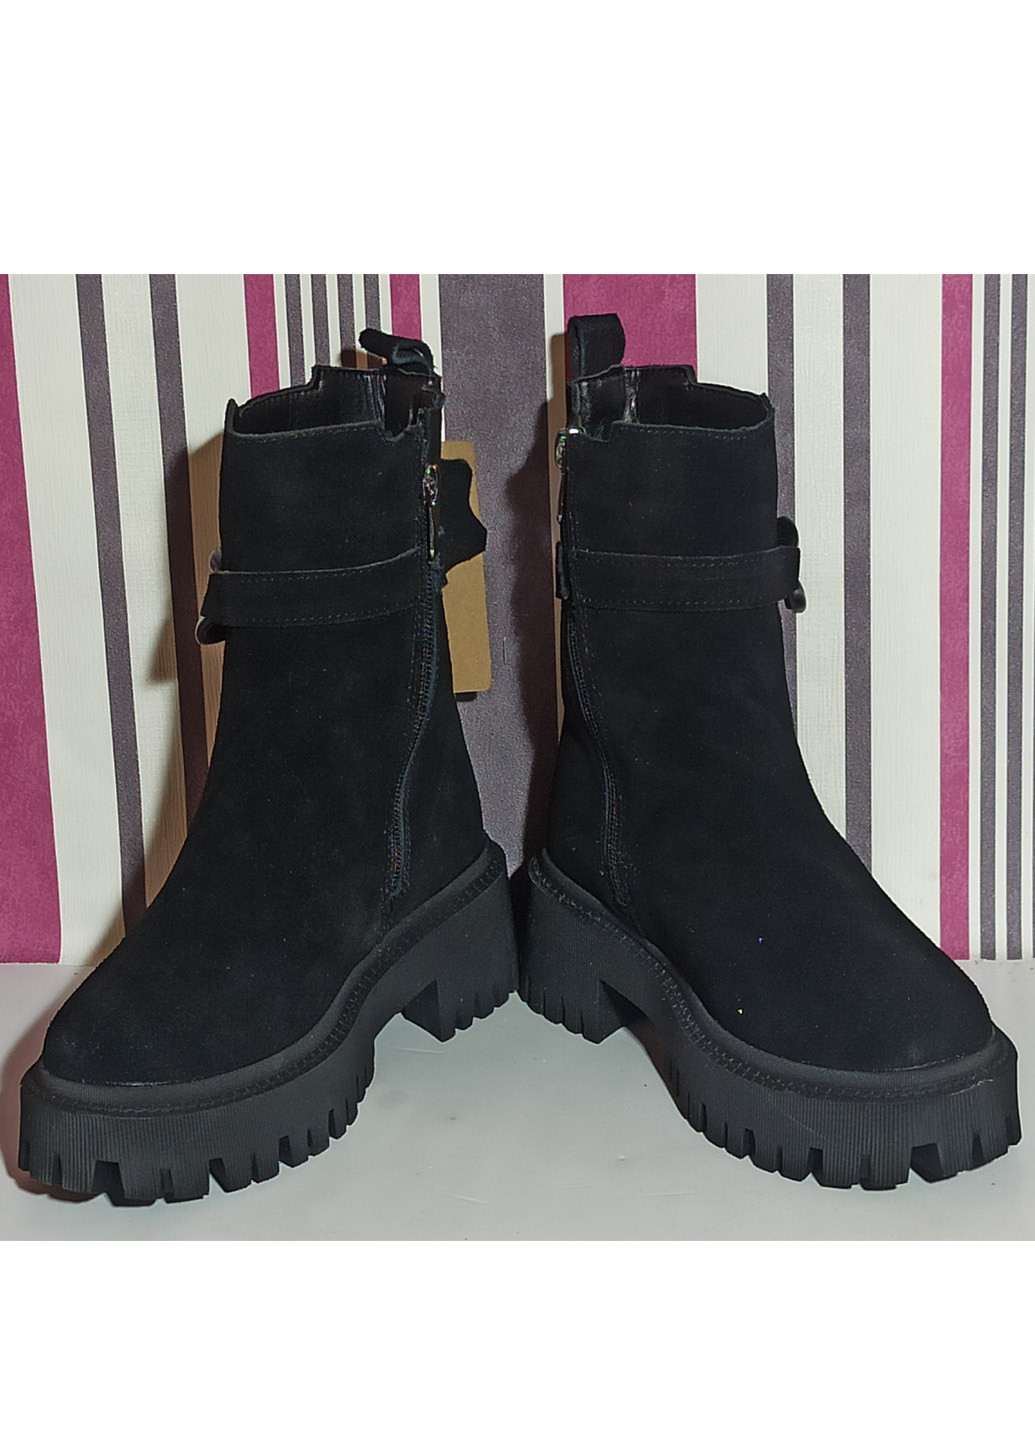 Зимние зимние ботинки для девочки подростка 1008-1 черные челси ITTS из натуральной замши